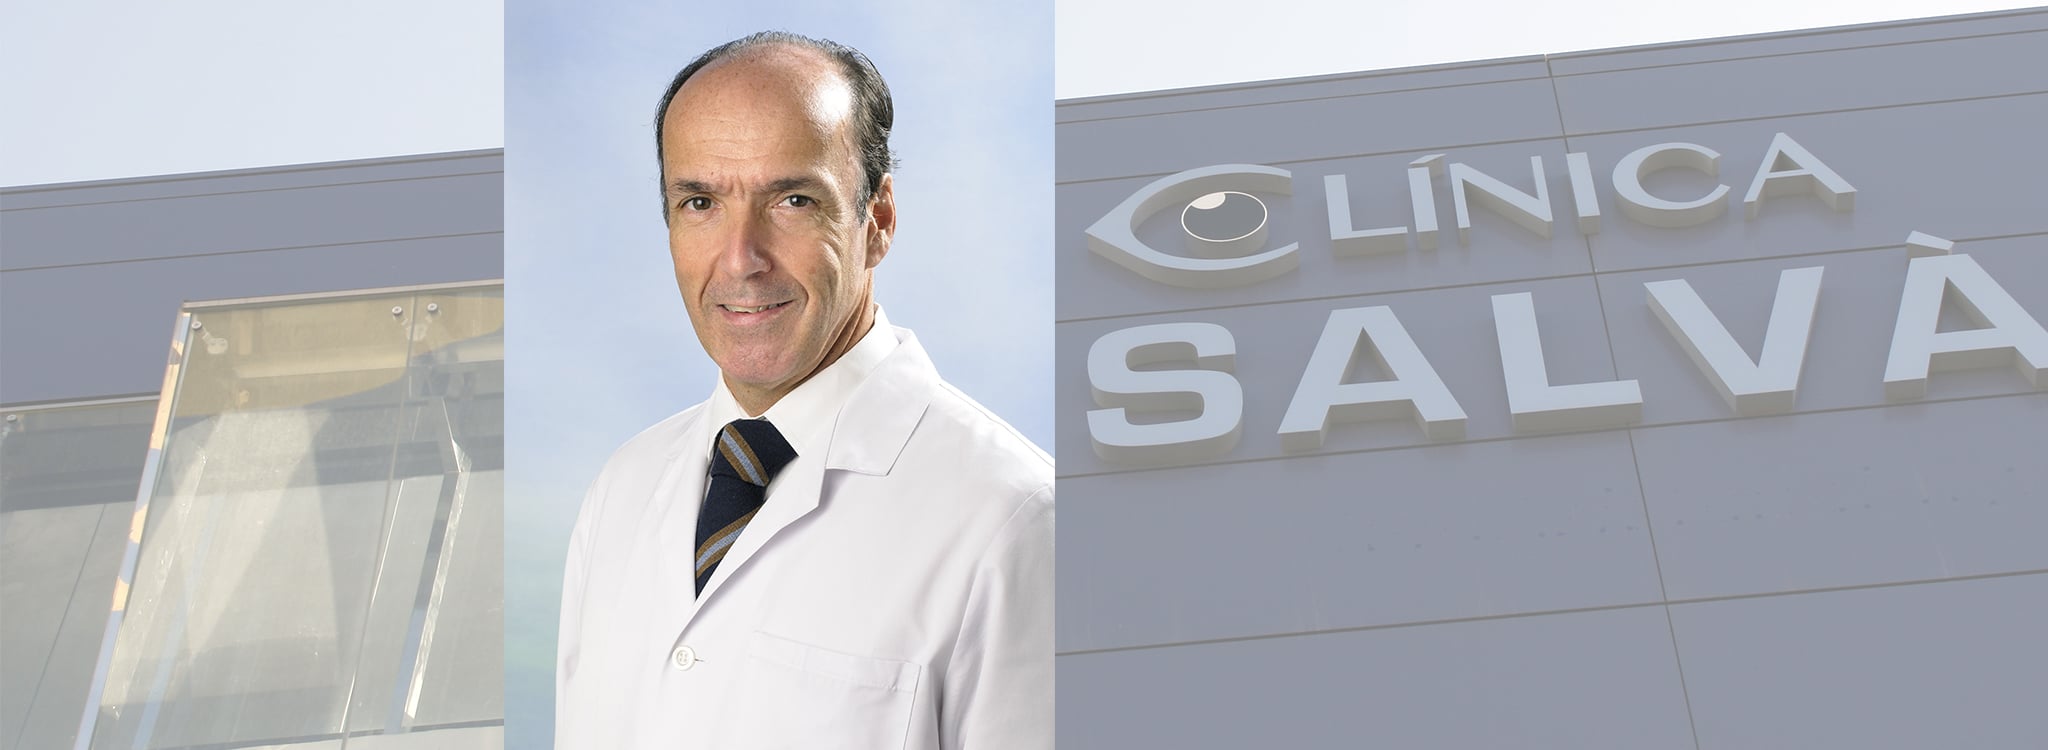 El Dr. Juan Sánchez Navés se incorpora al equipo médico de Oftalmedic Salvà